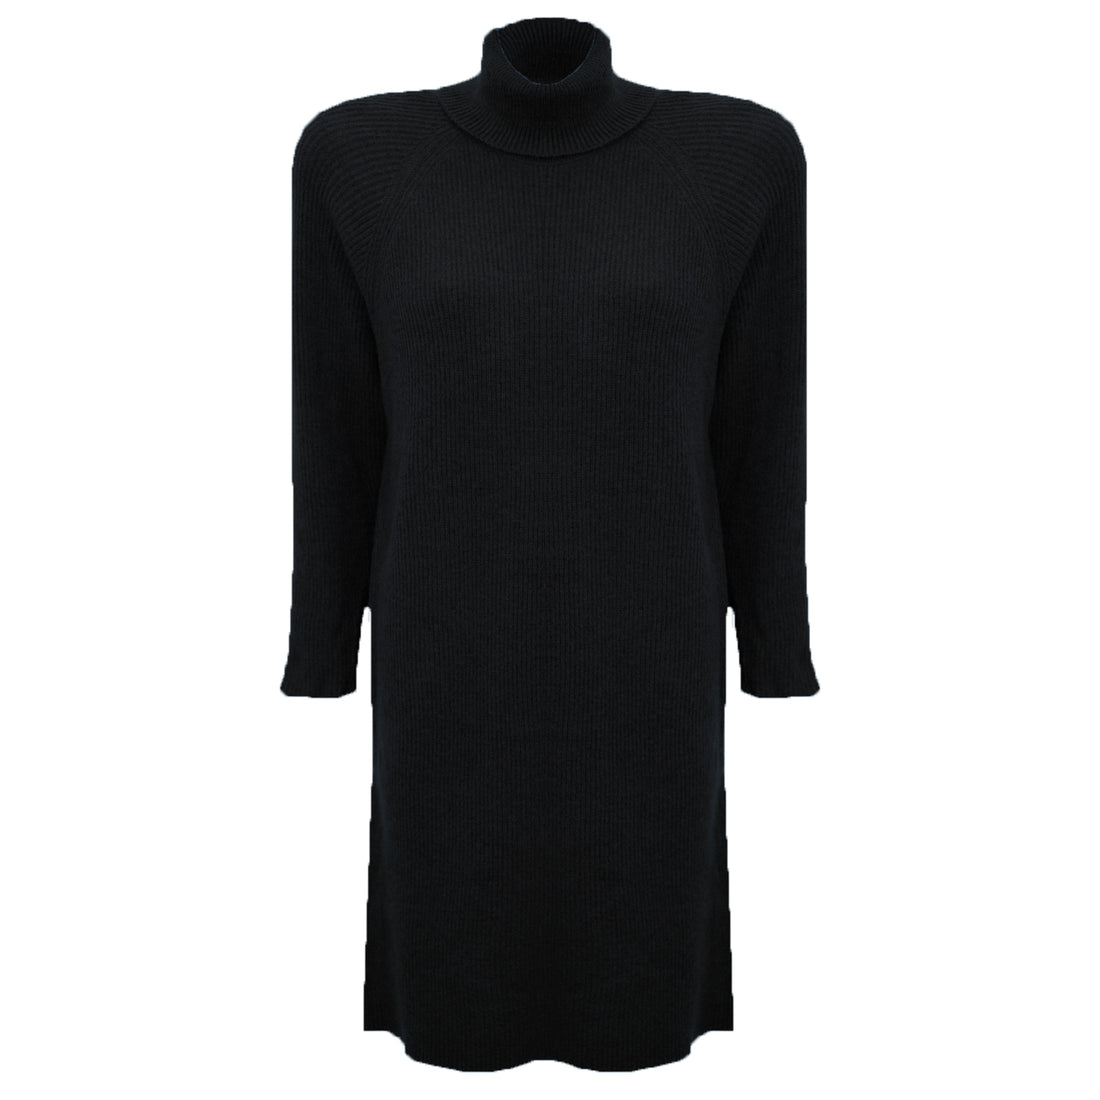 Midi gebreide col jurk zwart. Zwarte col jurk gebreid. Zwarte midi gebreide jurk met col. De jurk is one-size en geschikt voor maat S-XL. Materiaal van de jurk is 42% acryl, 30% nylon, 28% polyester.   Afmetingen | One-size | Lengte 86 cm | Taille breedte 57 cm